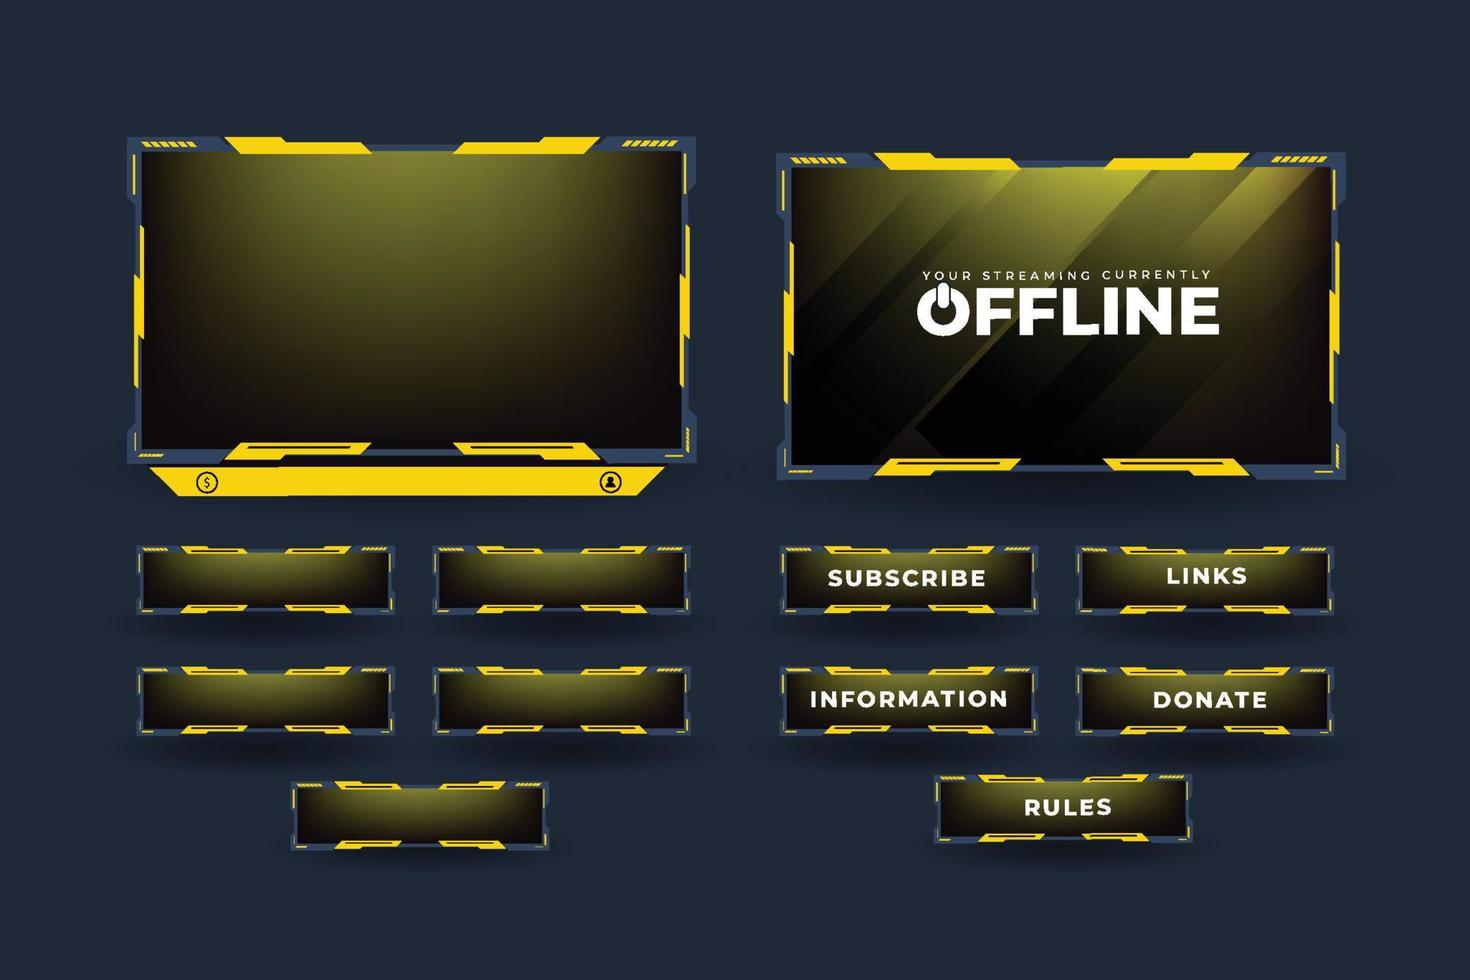 live streaming schermoverlay-vector voor online gamers. uitzending streaming overlay met gele en donkere kleuren. live gaming-overlay-decoratie met abonneerknoppen en een offline scherm. vector